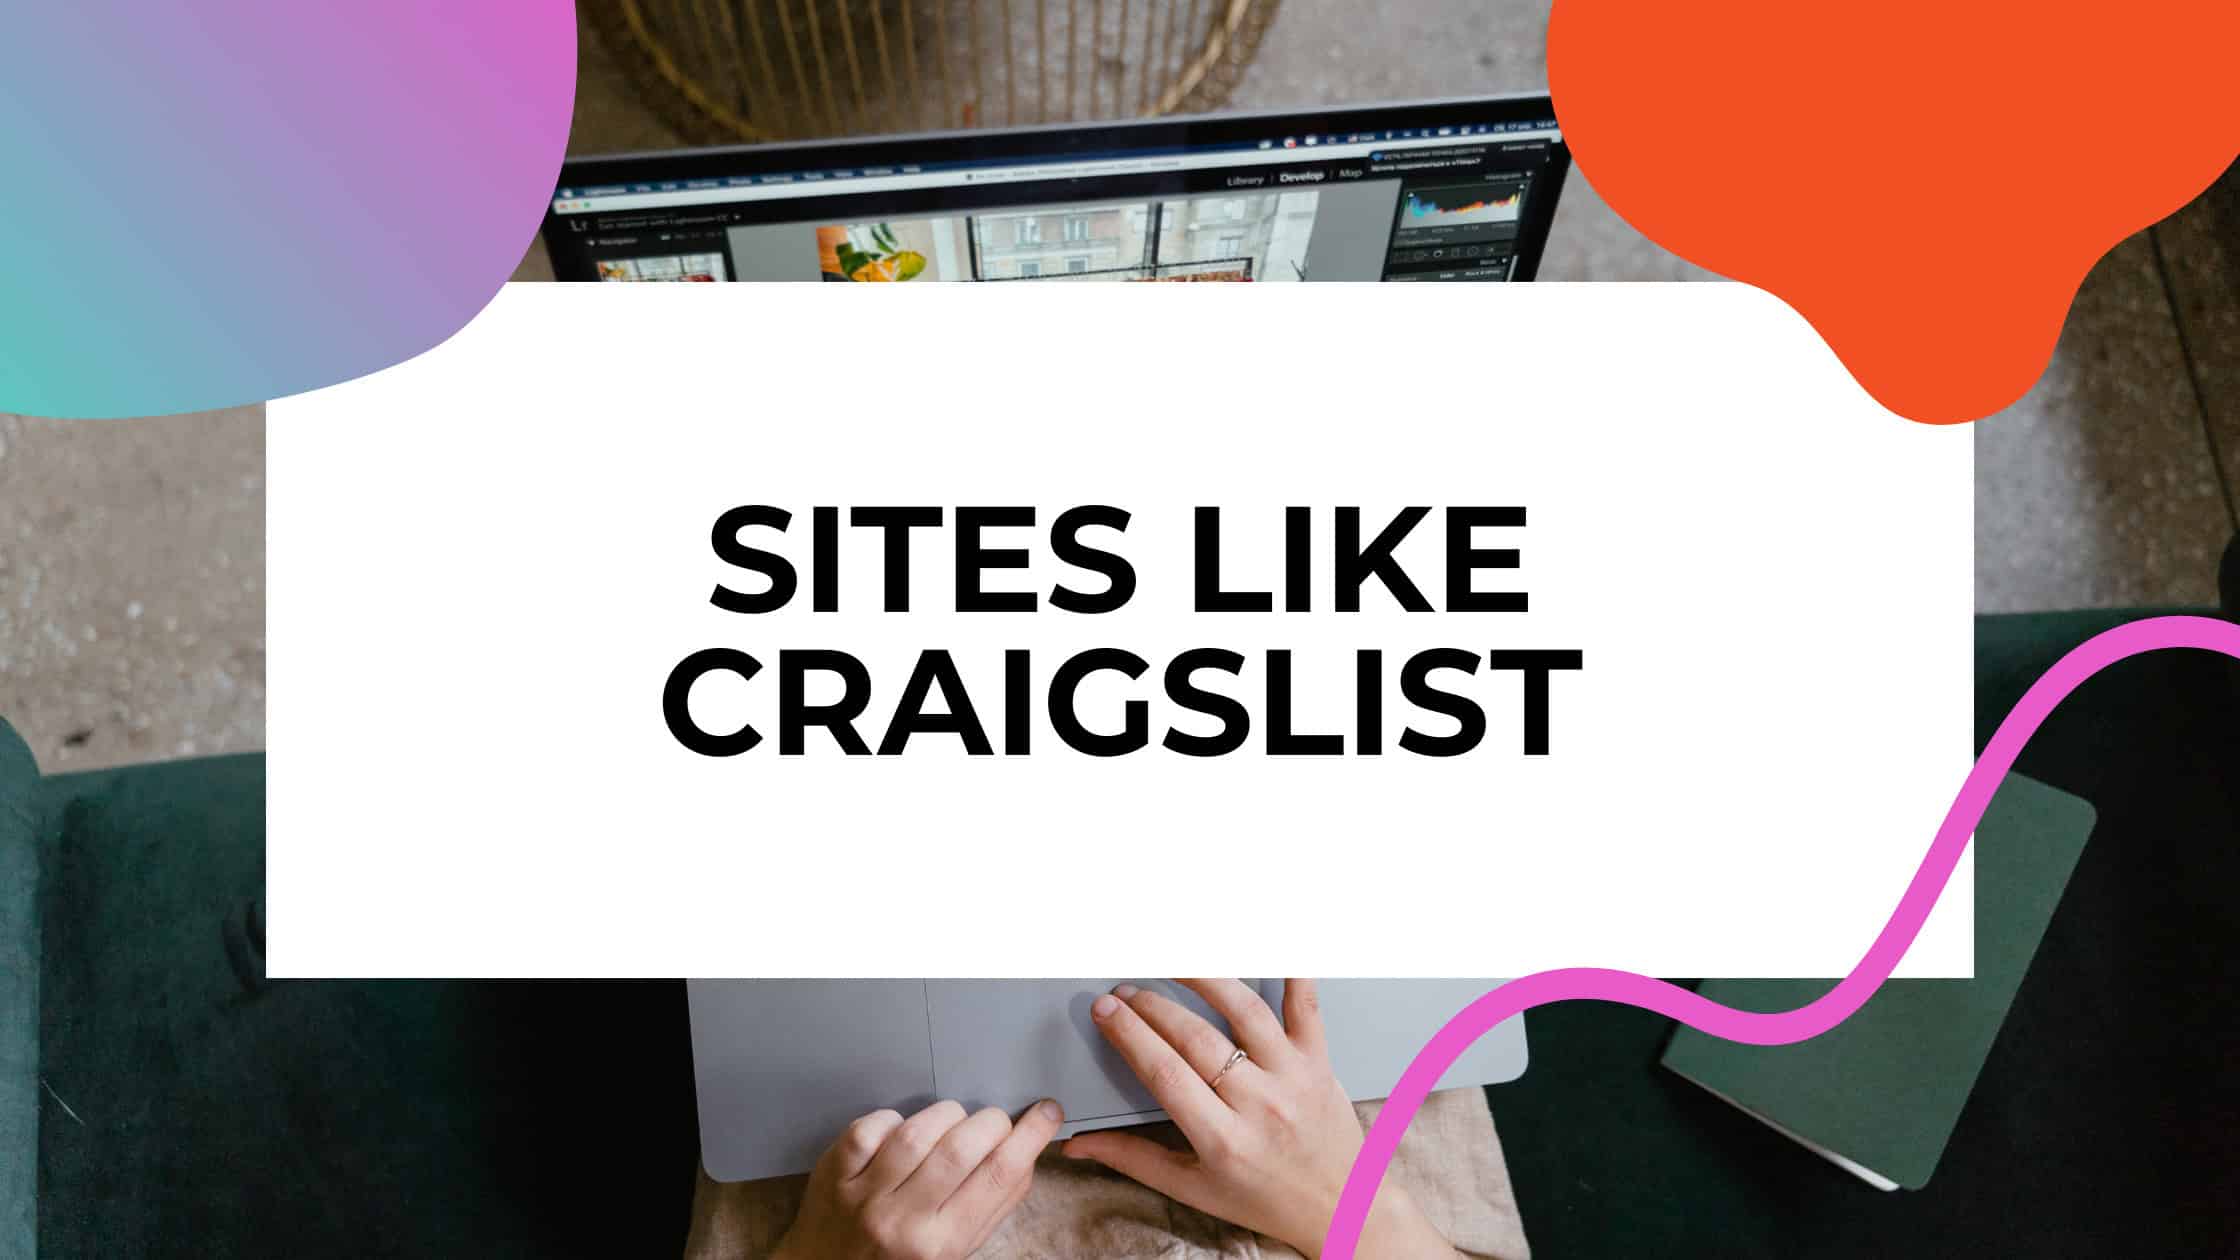 sites like craigslist article featured image